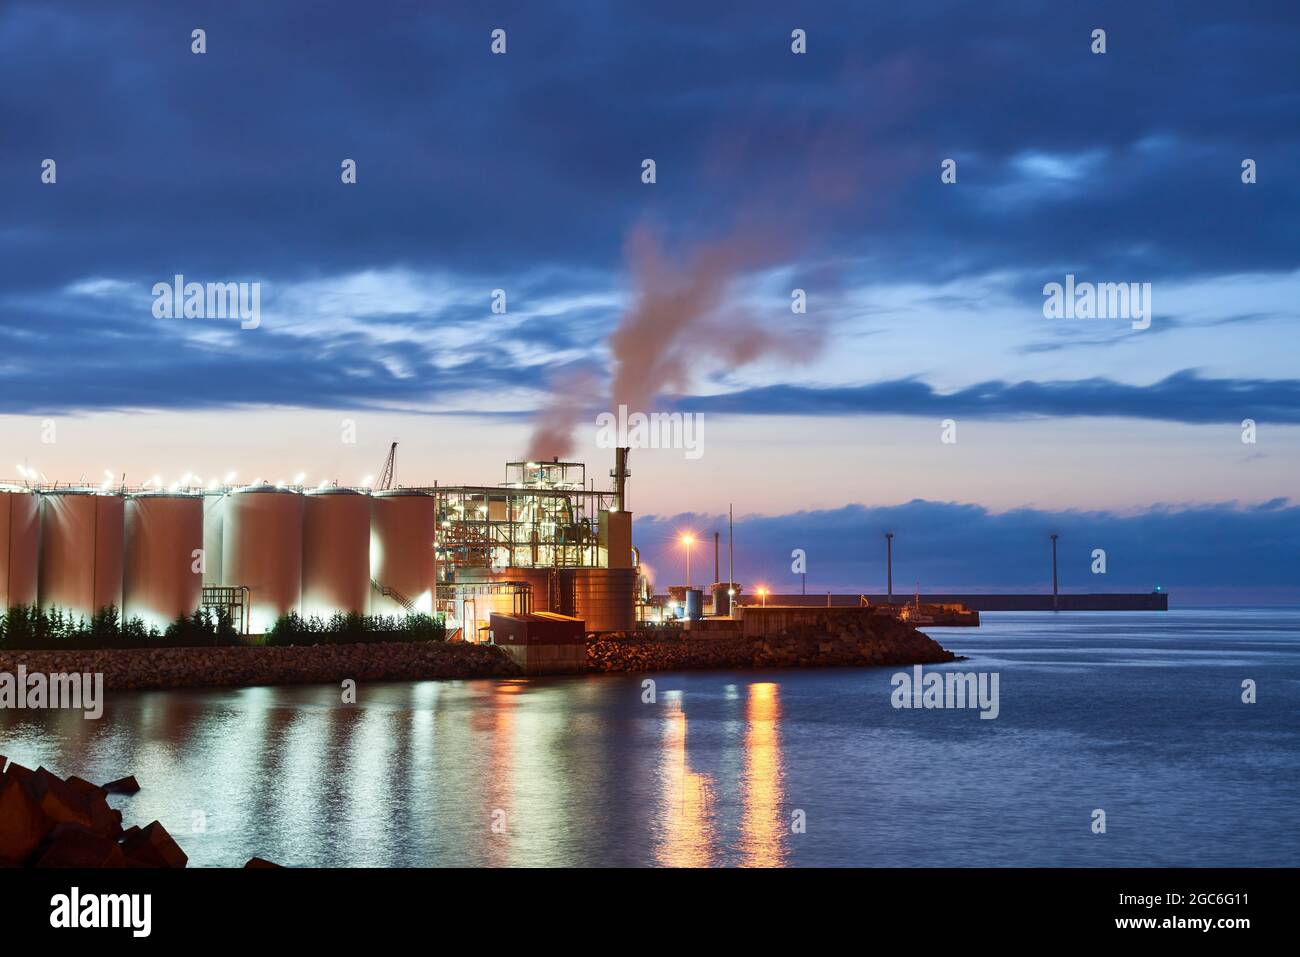 08/05/2021, Detalle de una fábrica de noche en el puerto de Bilbao, Santurtzi, País Vasco, España, Europa Foto de stock